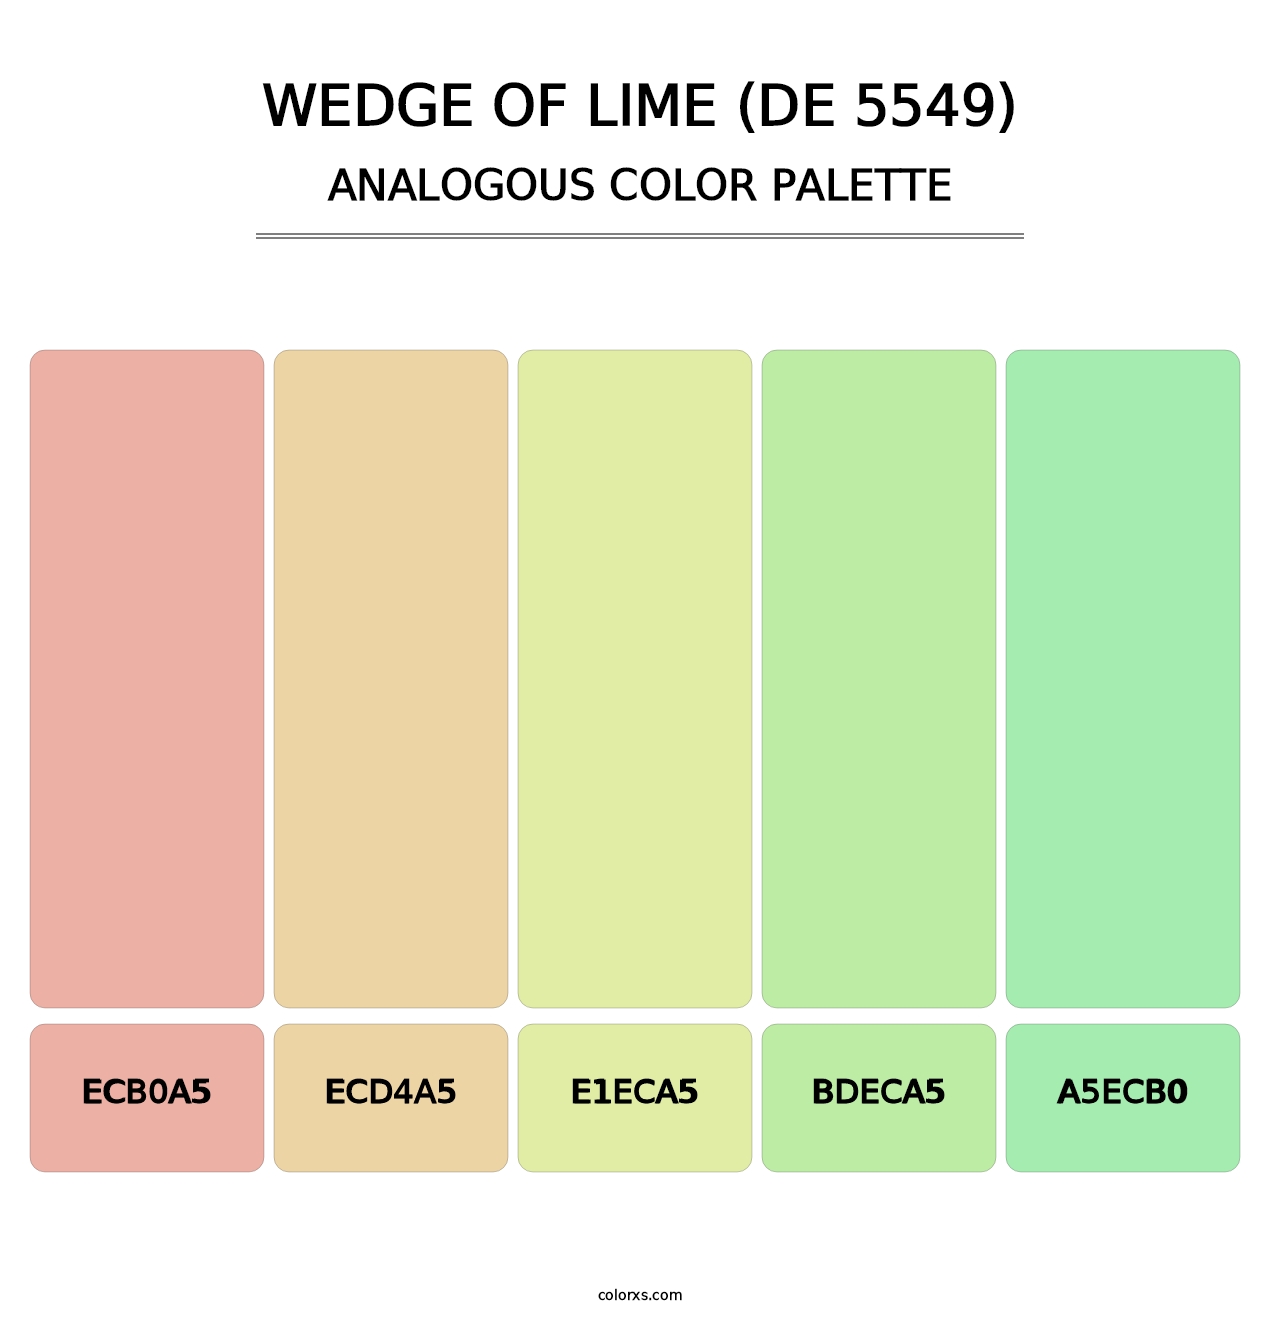 Wedge of Lime (DE 5549) - Analogous Color Palette